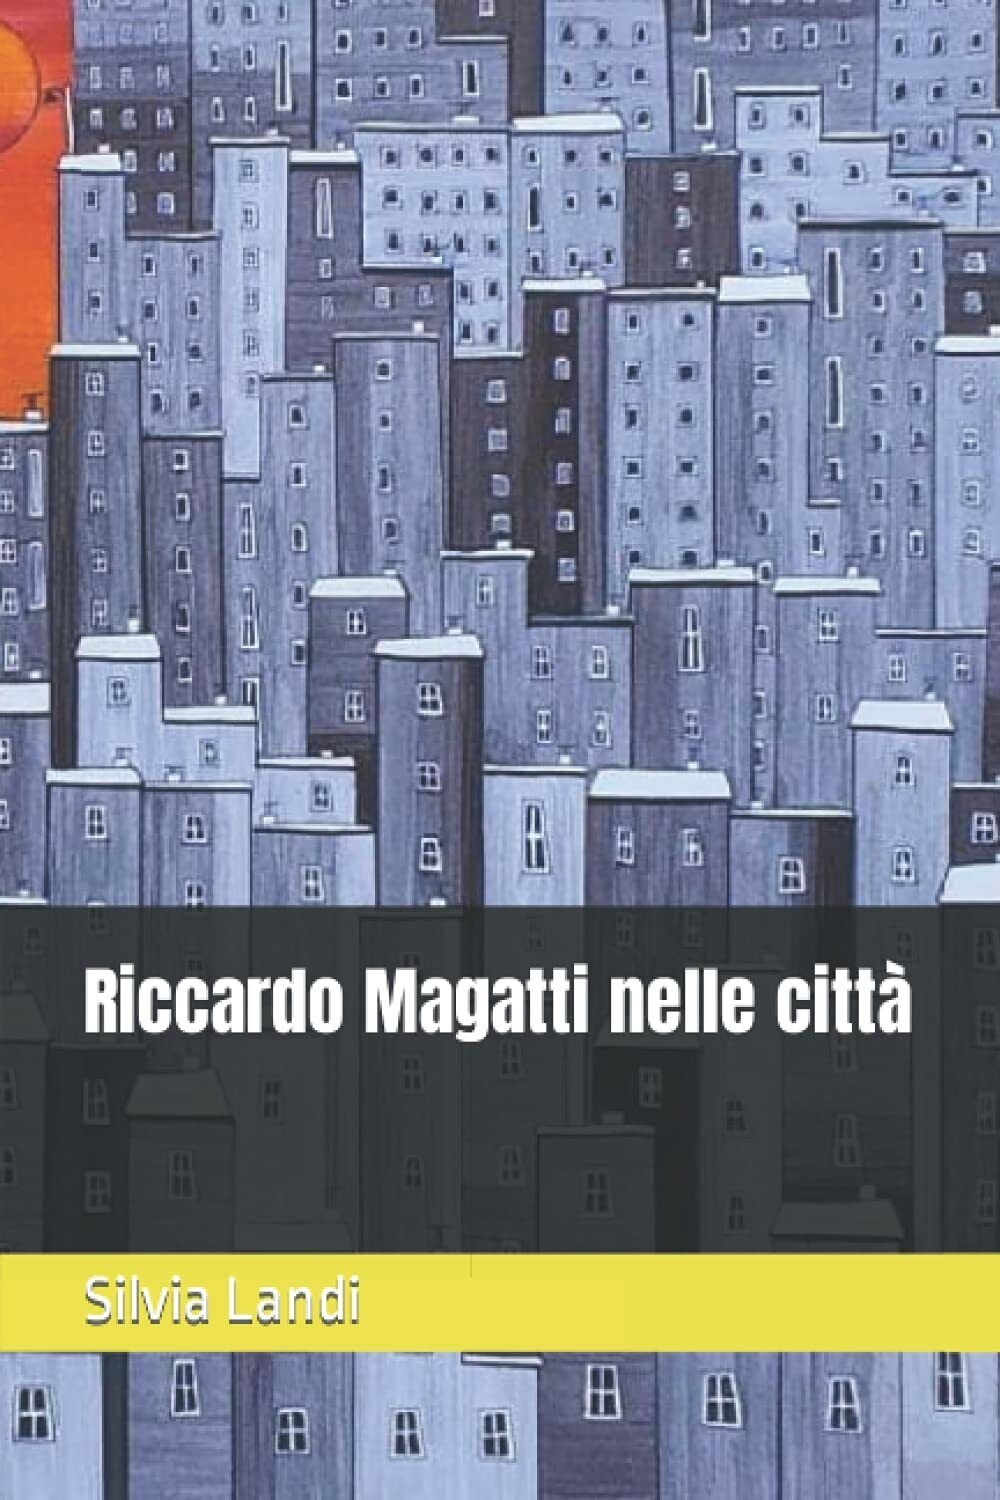 Riccardo Magatti nelle citt? di Silvia Landi,  2021,  Indipendently Published